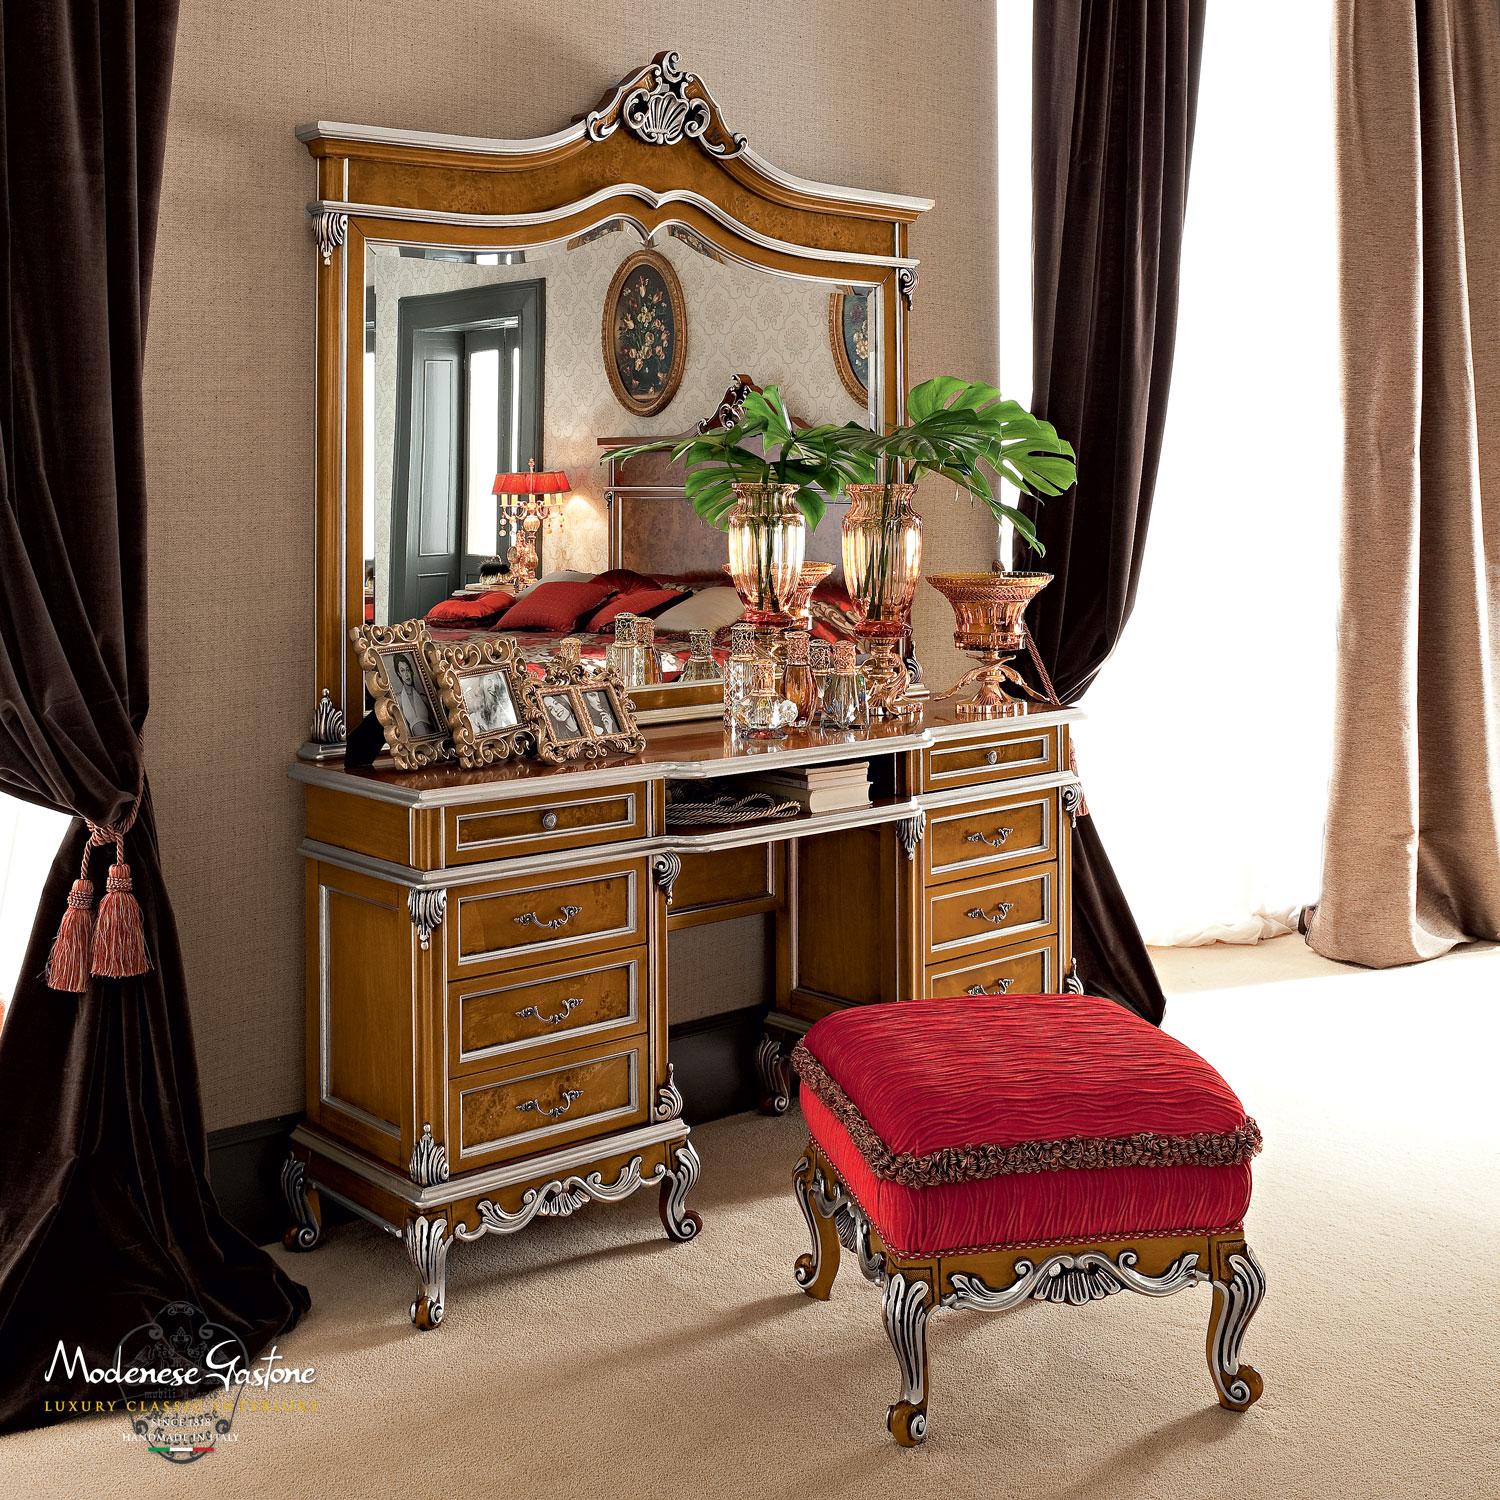 Table de maquillage classique sur mesure du 21e siècle par Modenese Gastone Interiors, producteur italien de meubles. L'élégance unique de ce meuble sous-vasque à huit tiroirs est remarquable lorsque l'on observe sa silhouette droite, la finition